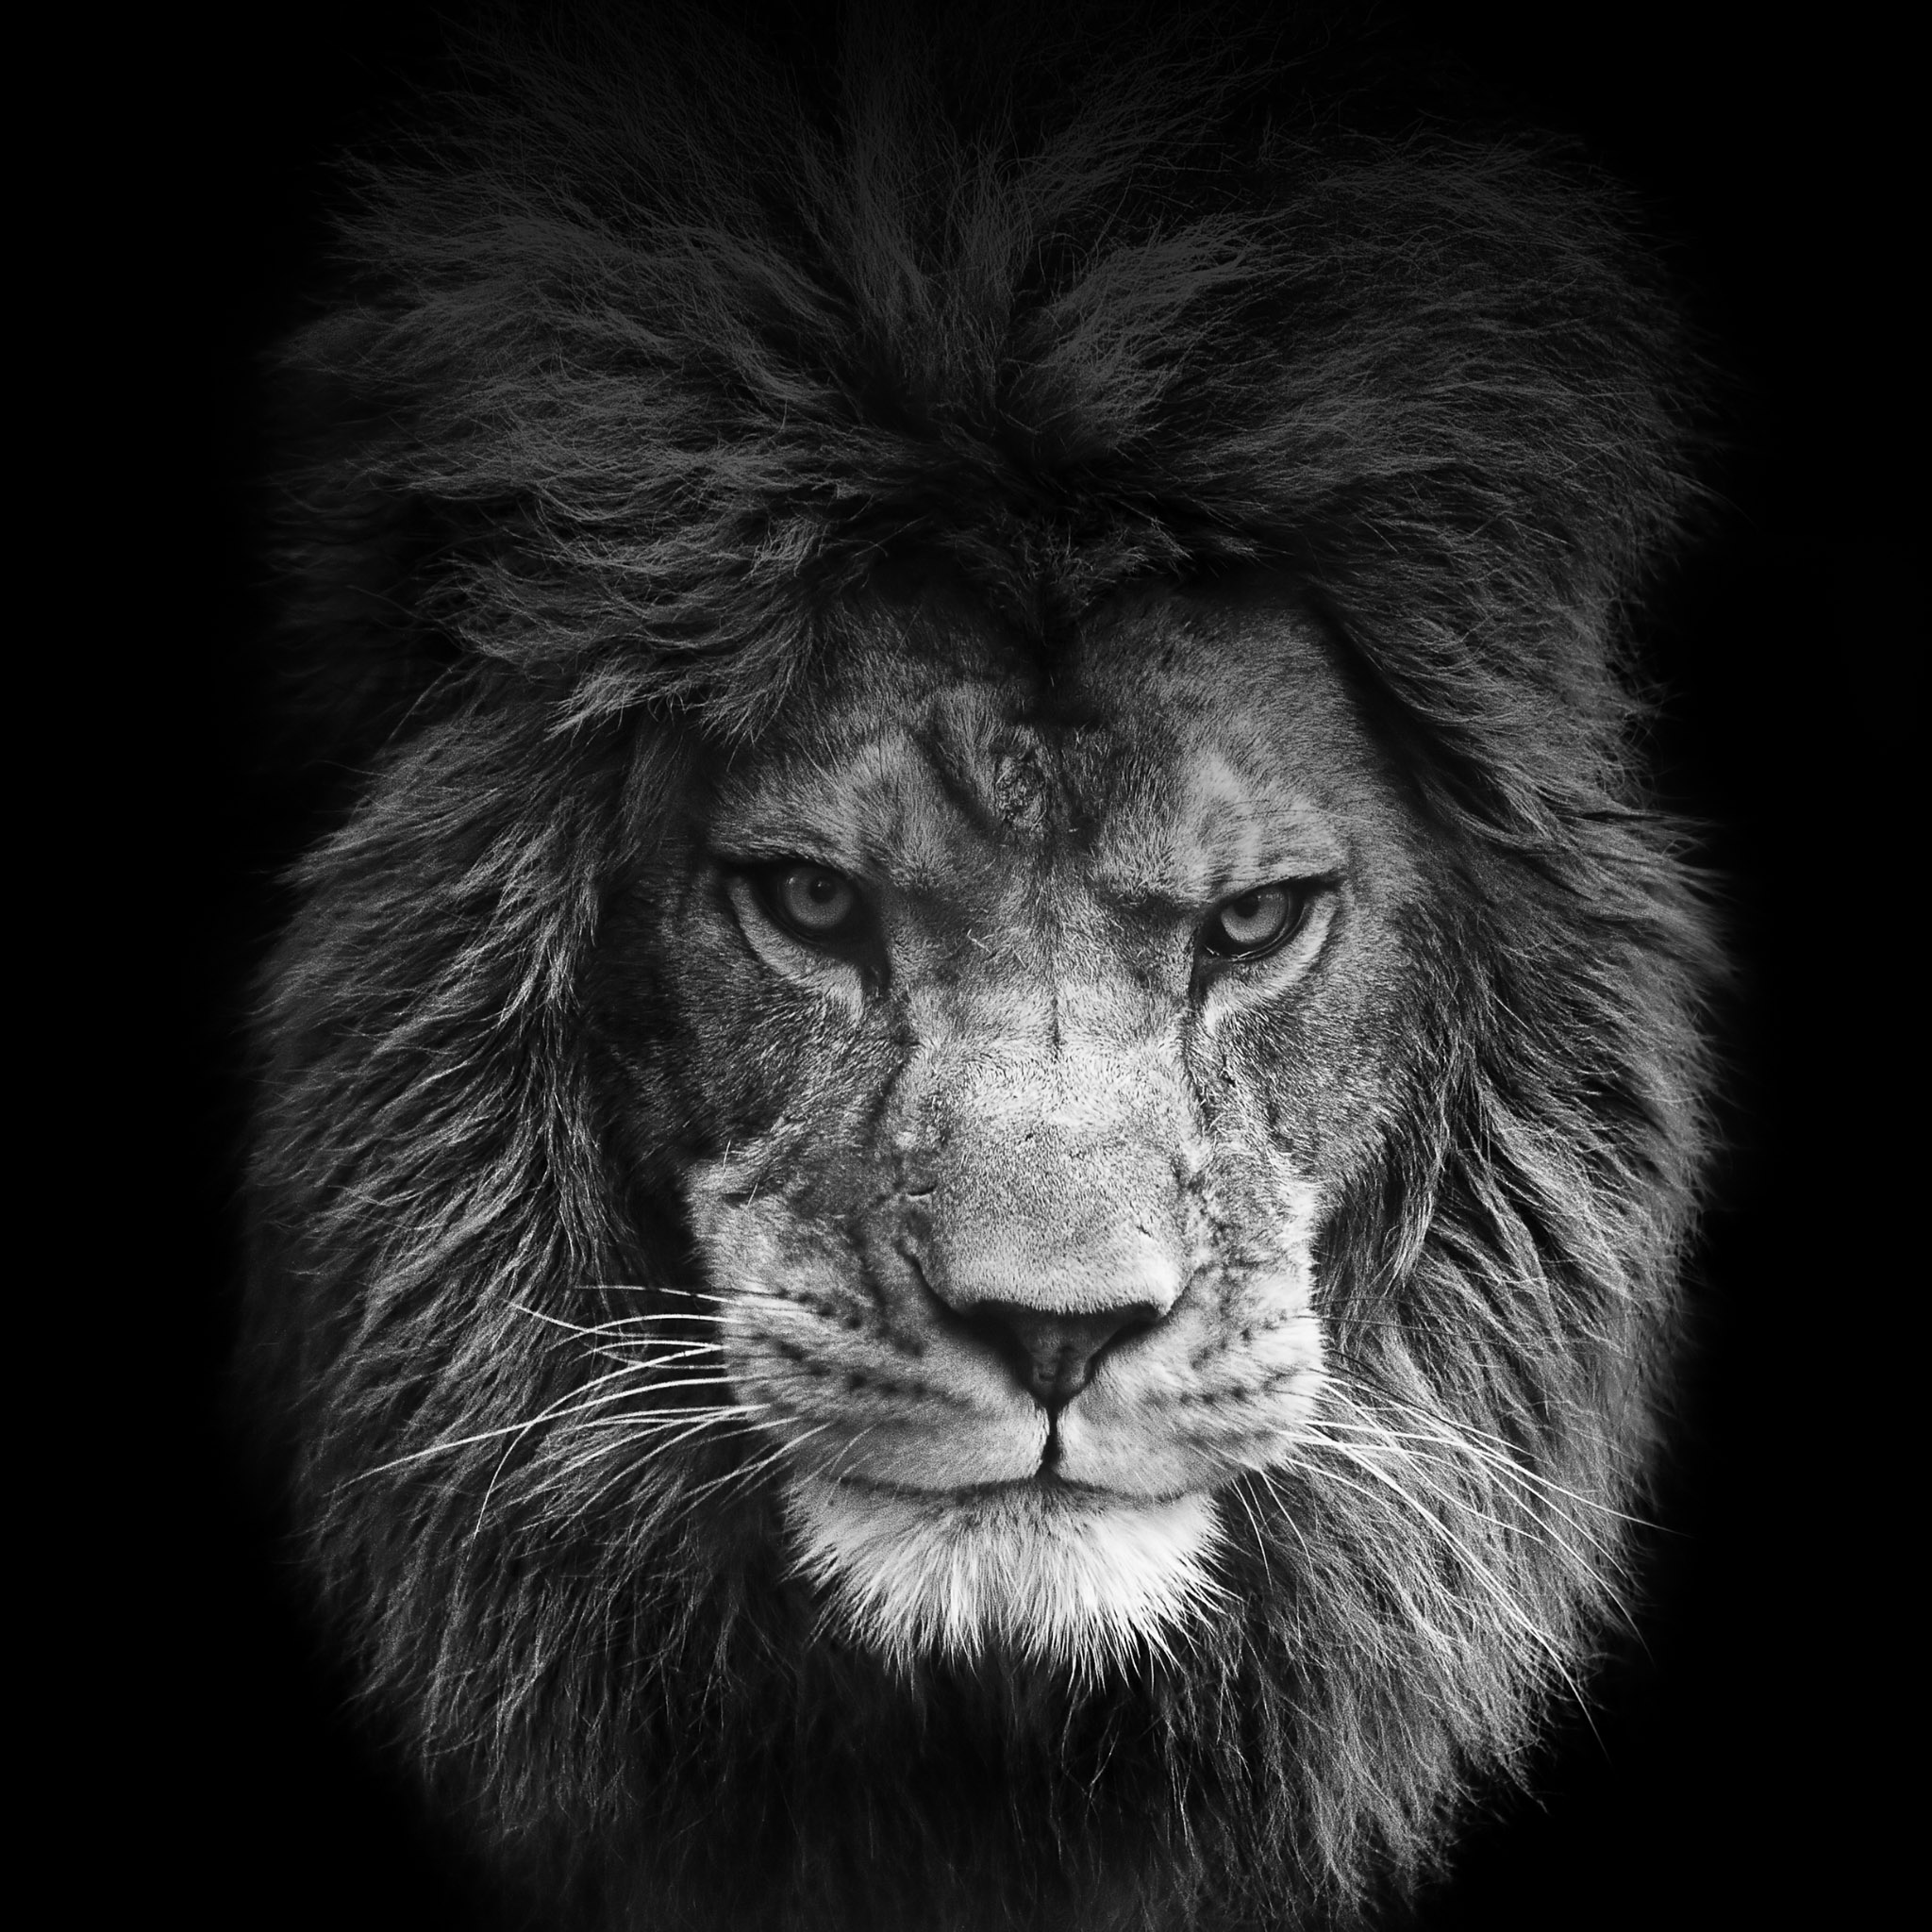 45+] Lion iPhone Wallpaper - WallpaperSafari